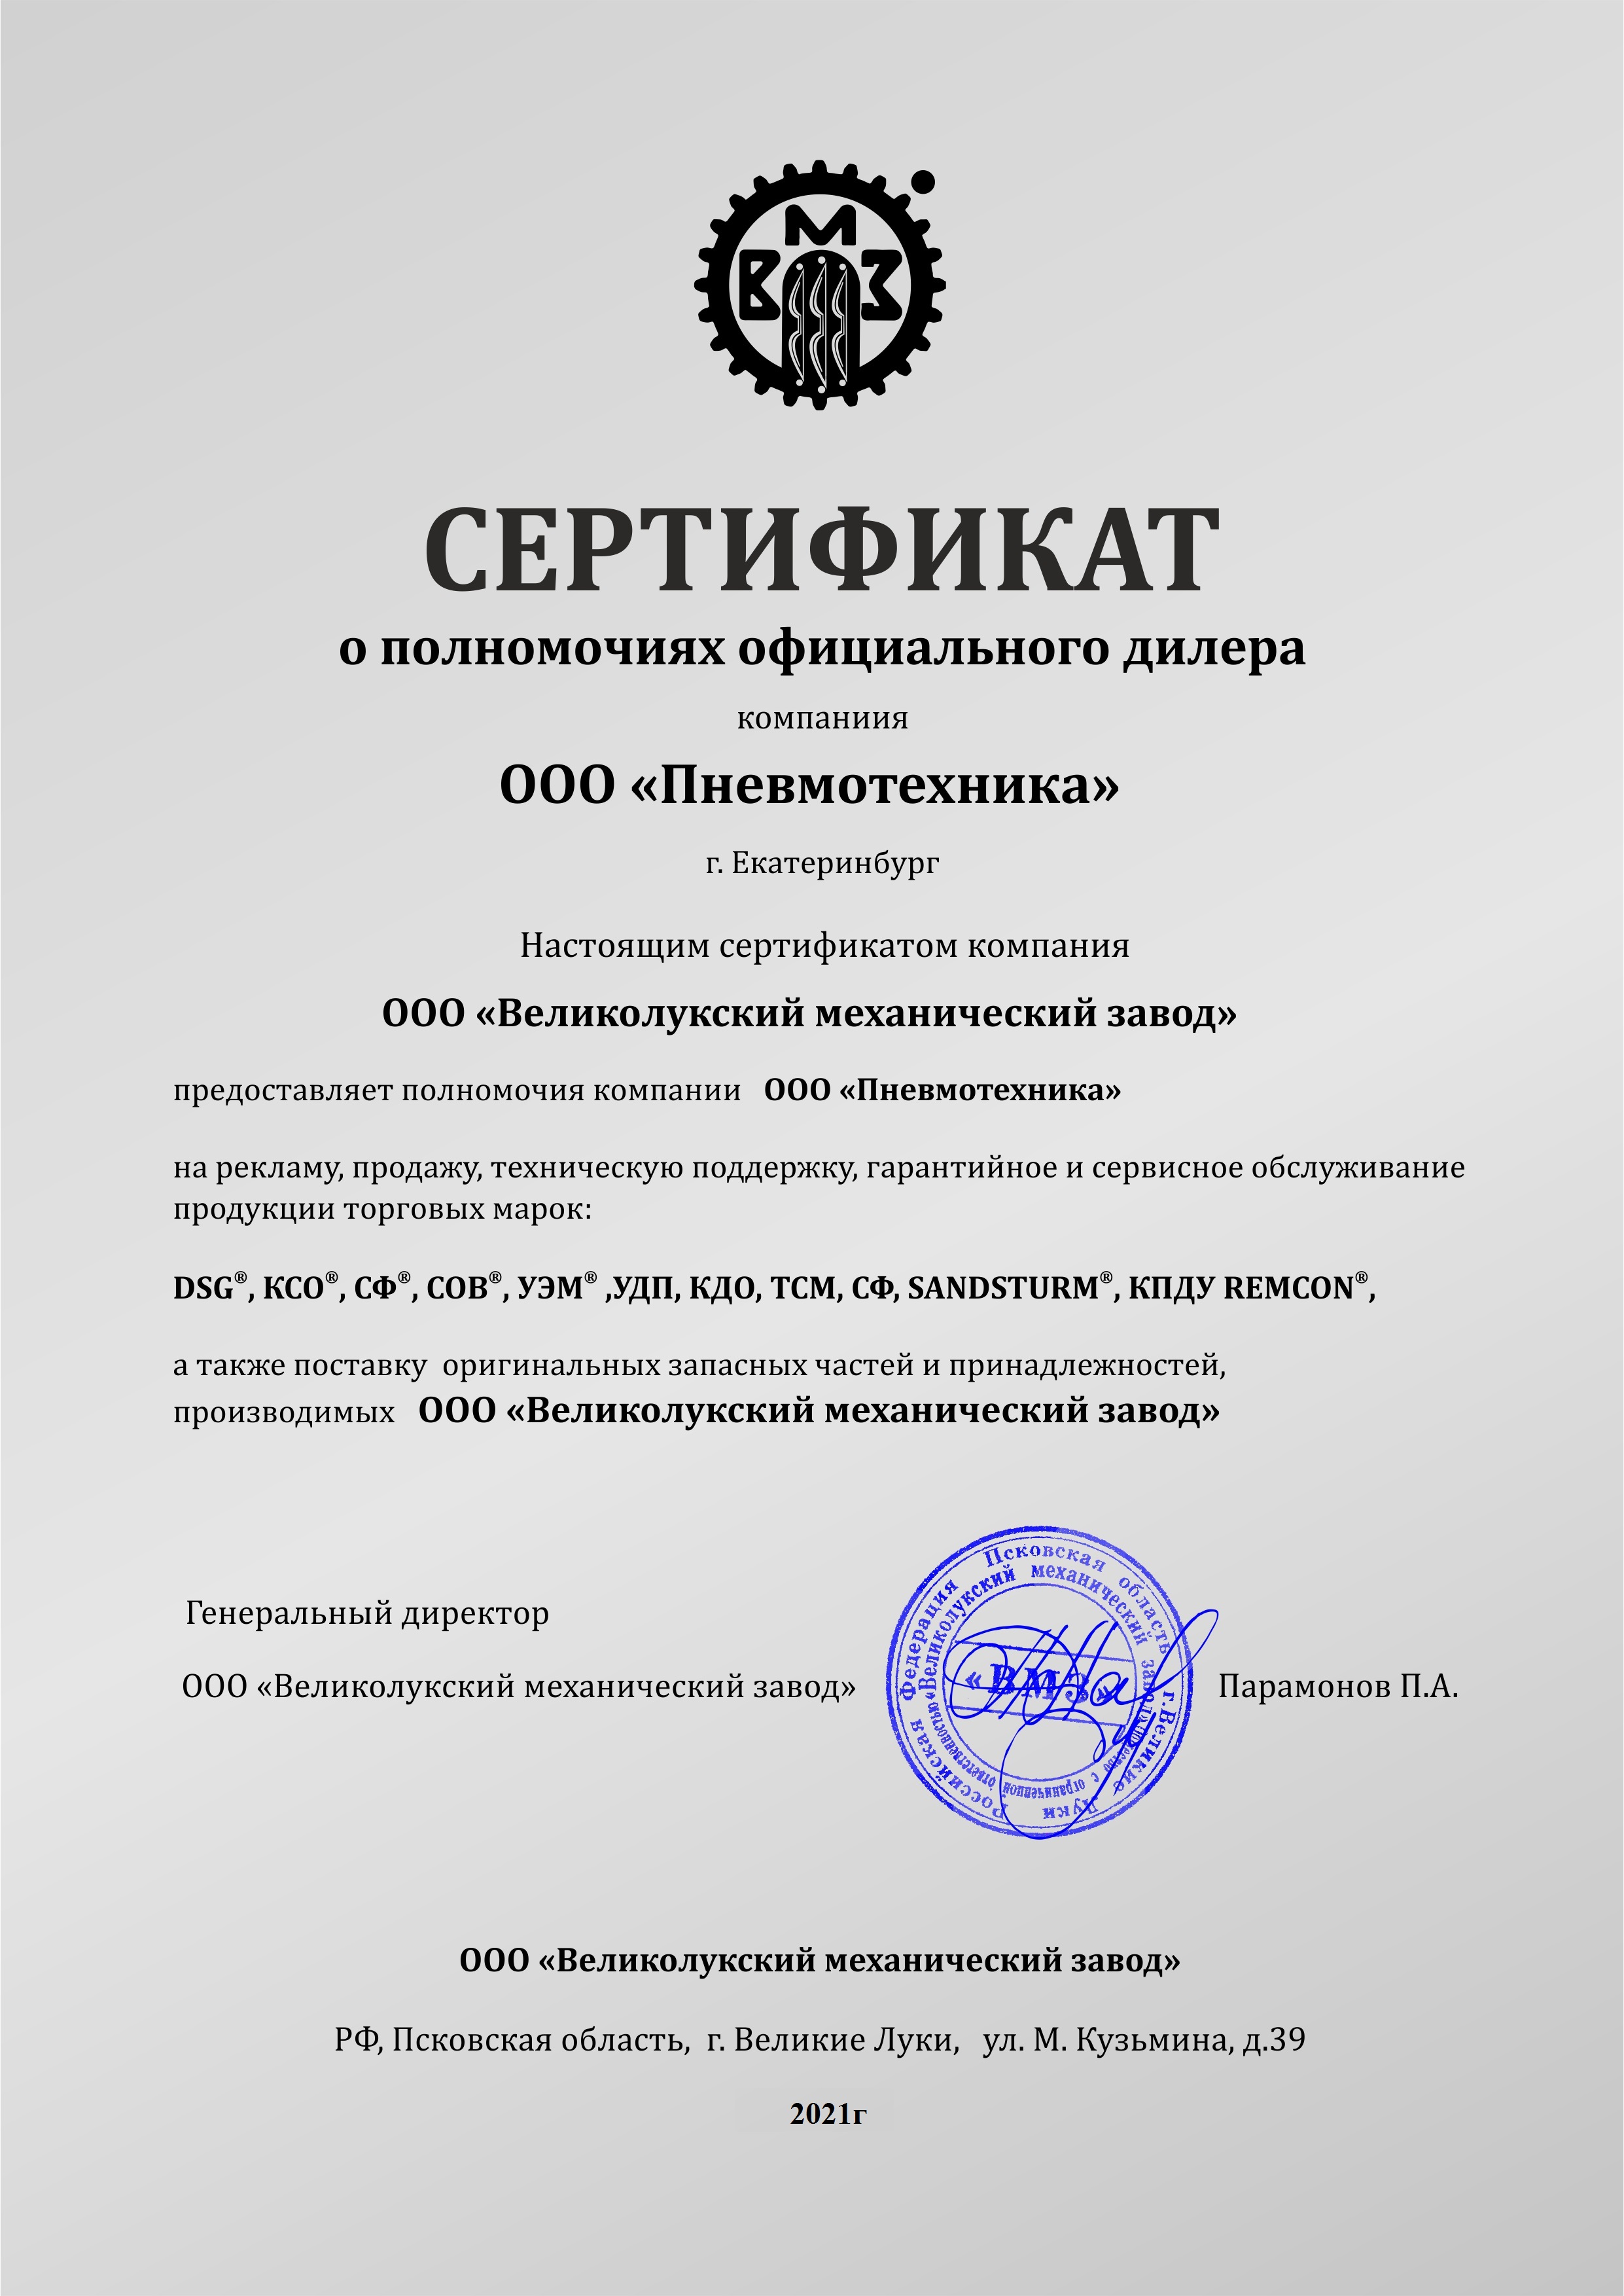 Сертификат, подтверждающий, что ООО «Пневмотехника» является официальным дилером ООО  «Великолукского механического завода». 